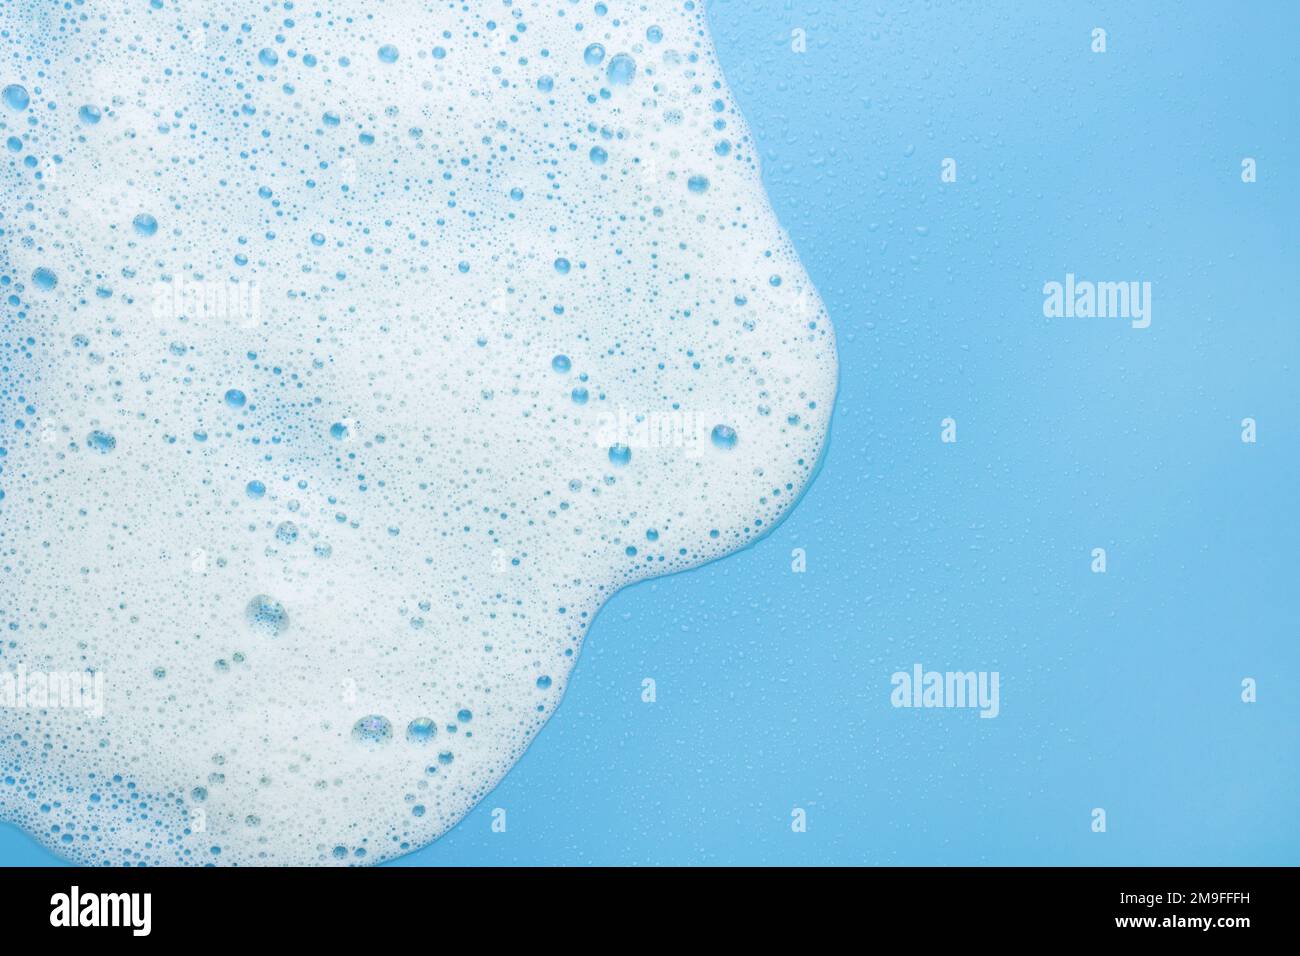 Schiuma bianca, mousse su sfondo blu. Bordo per il testo espanso. Il concetto di prodotti schiumogeni, cosmetici o detergenti. Foto Stock